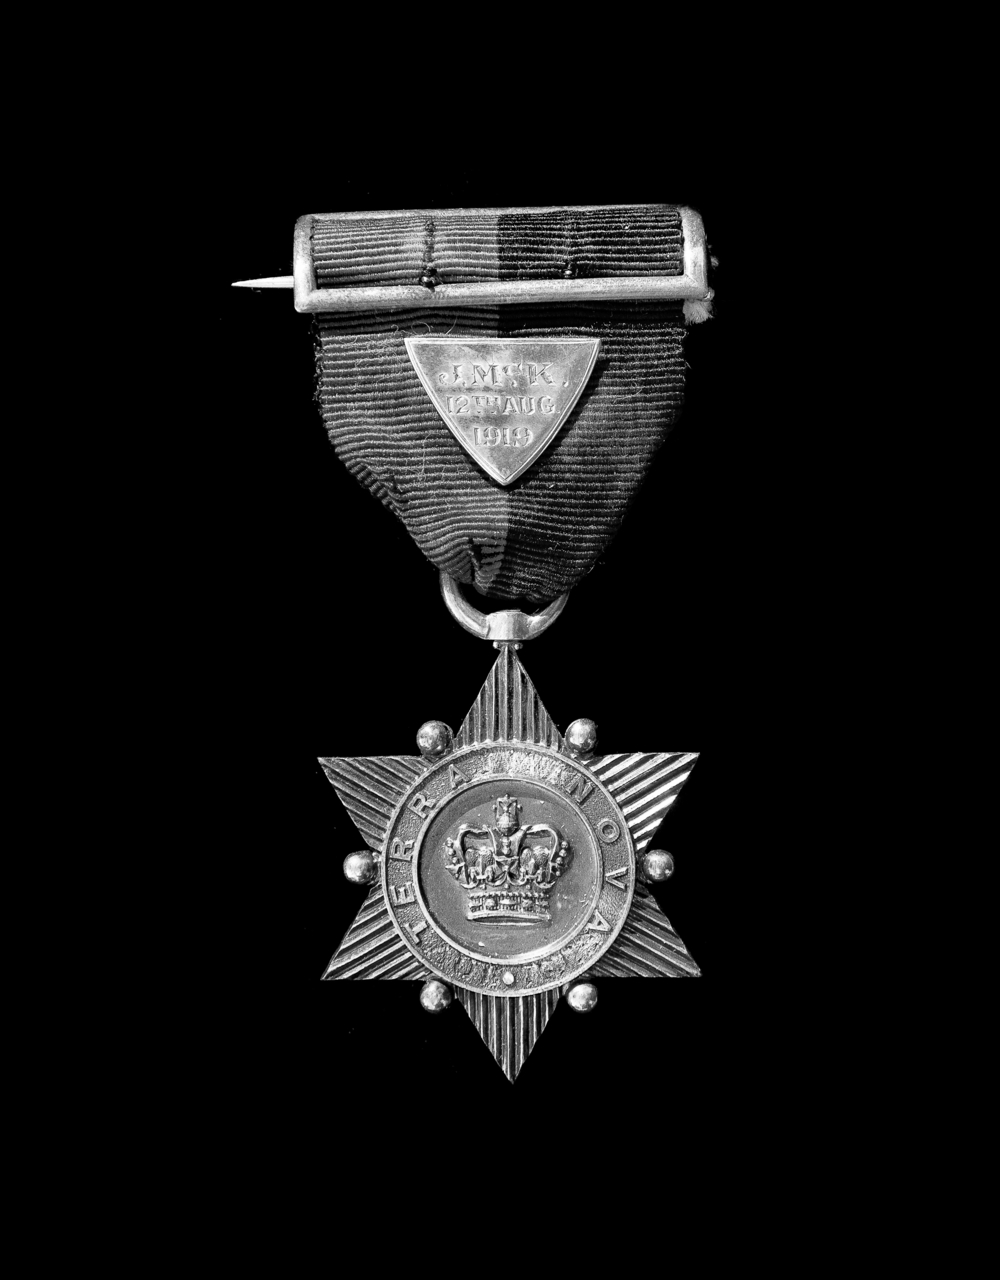 Photographie moderne en noir et blanc d’une médaille sur un ruban.